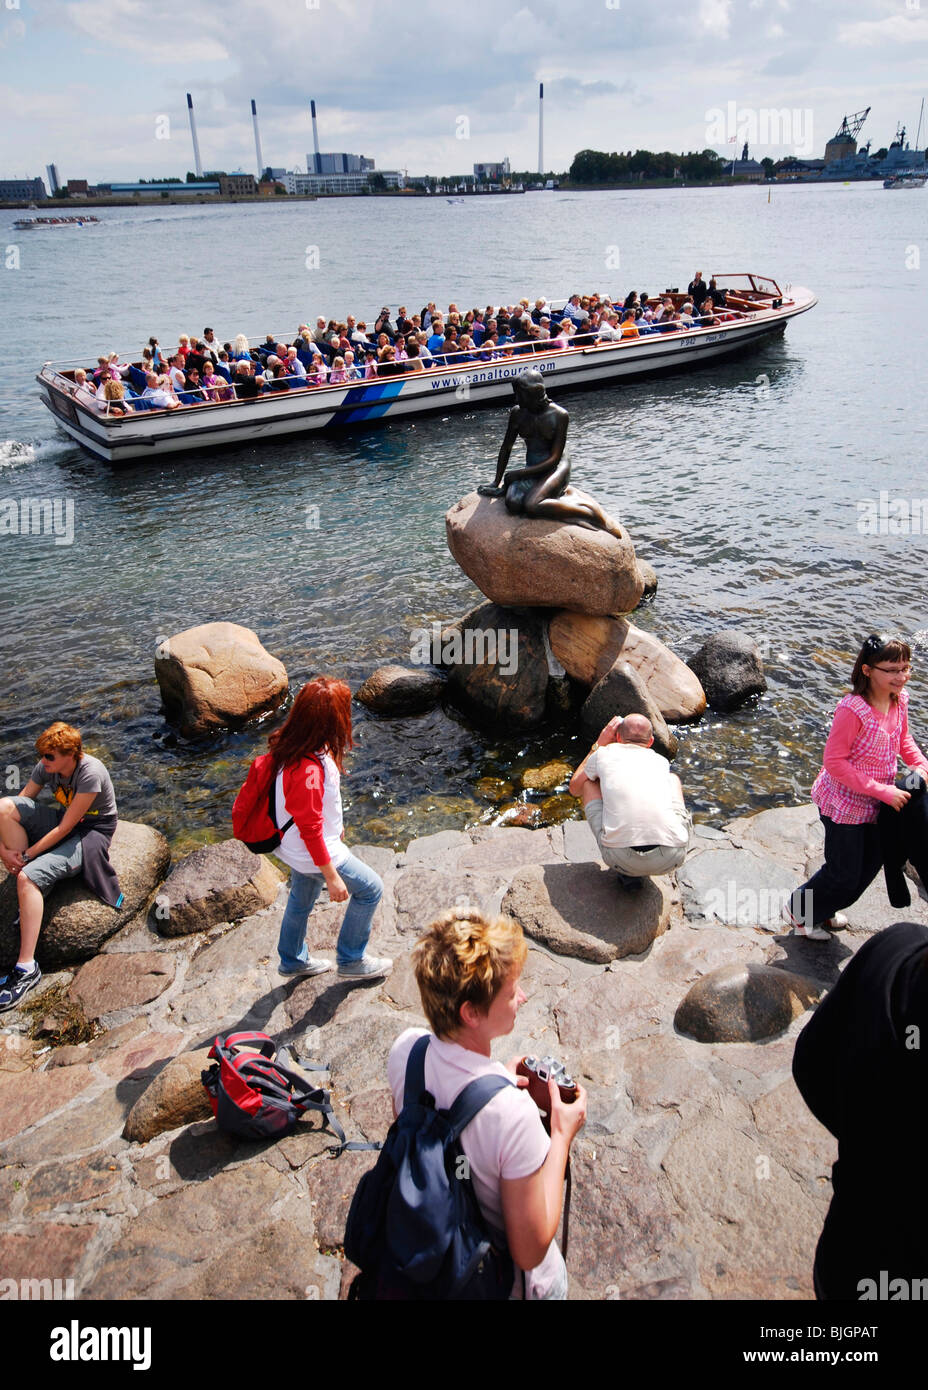 Rassemblement de touristes autour de Copenhague, sur l'attraction touristique de premier choix : la sculpture de bronze Den lille havfrue, La Petite Sirène. Banque D'Images